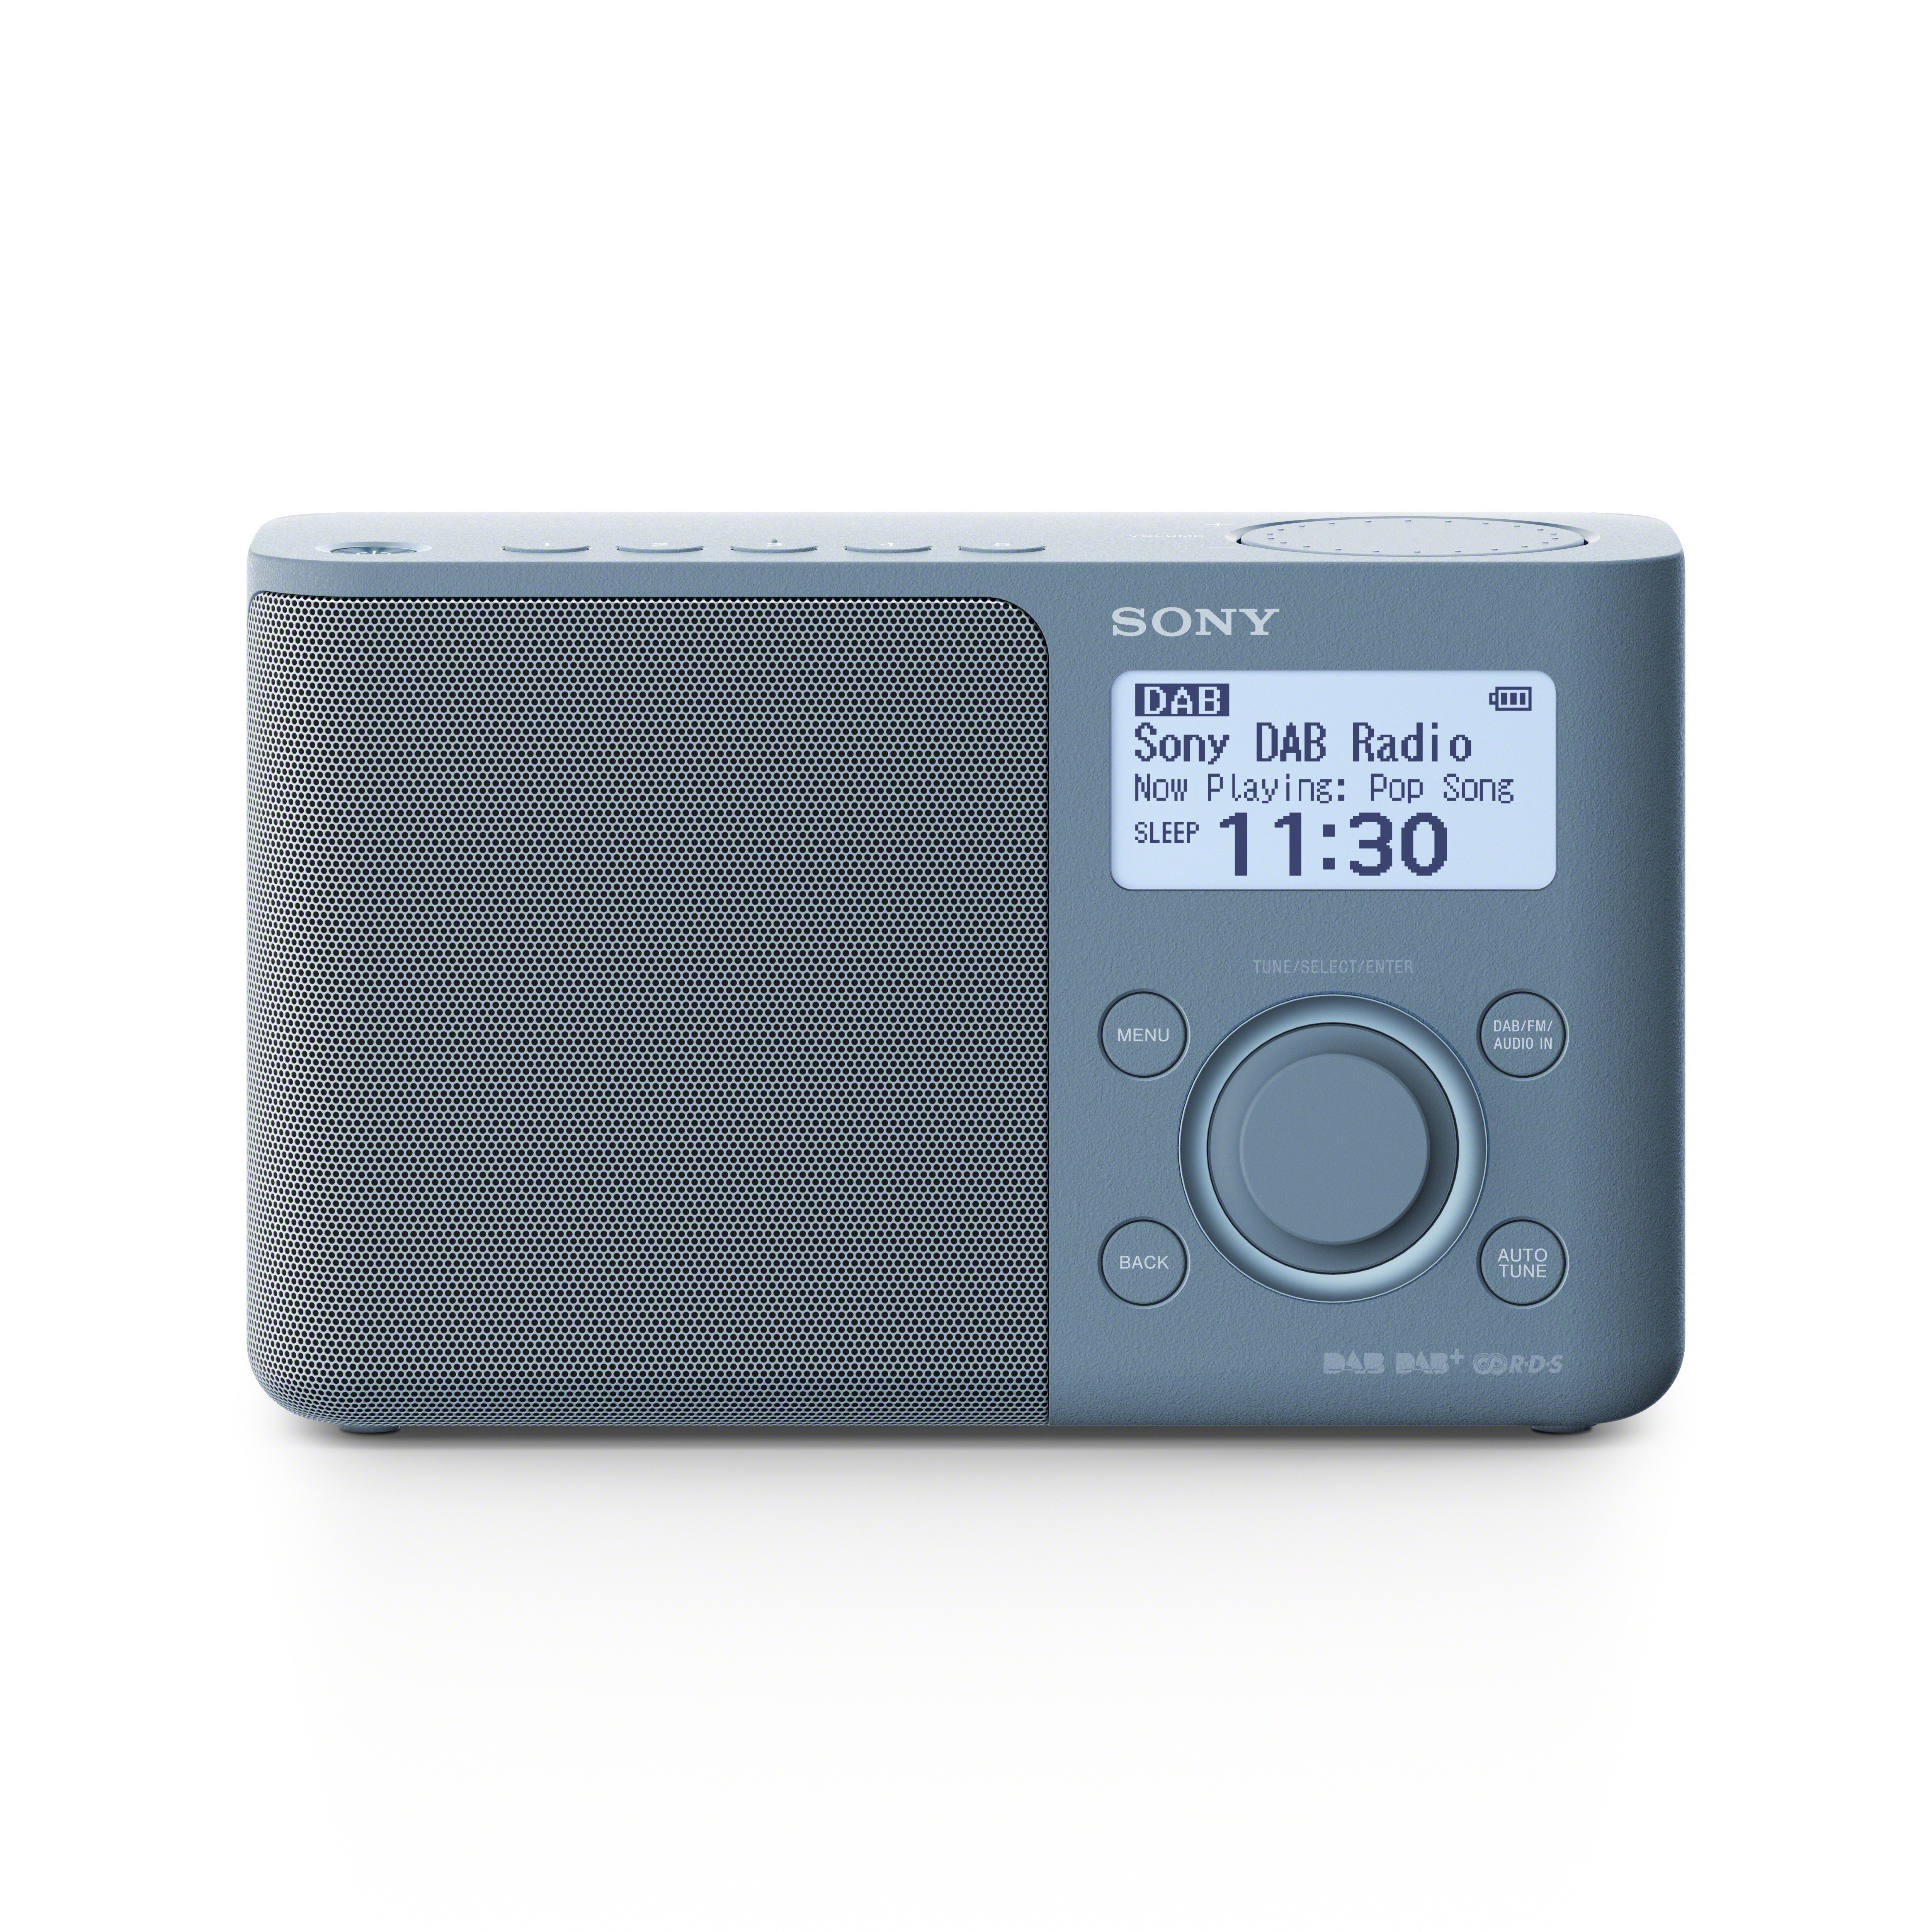 SONY XDR-S61D DAB+ Radio, Blau digital, FM, DAB, DAB